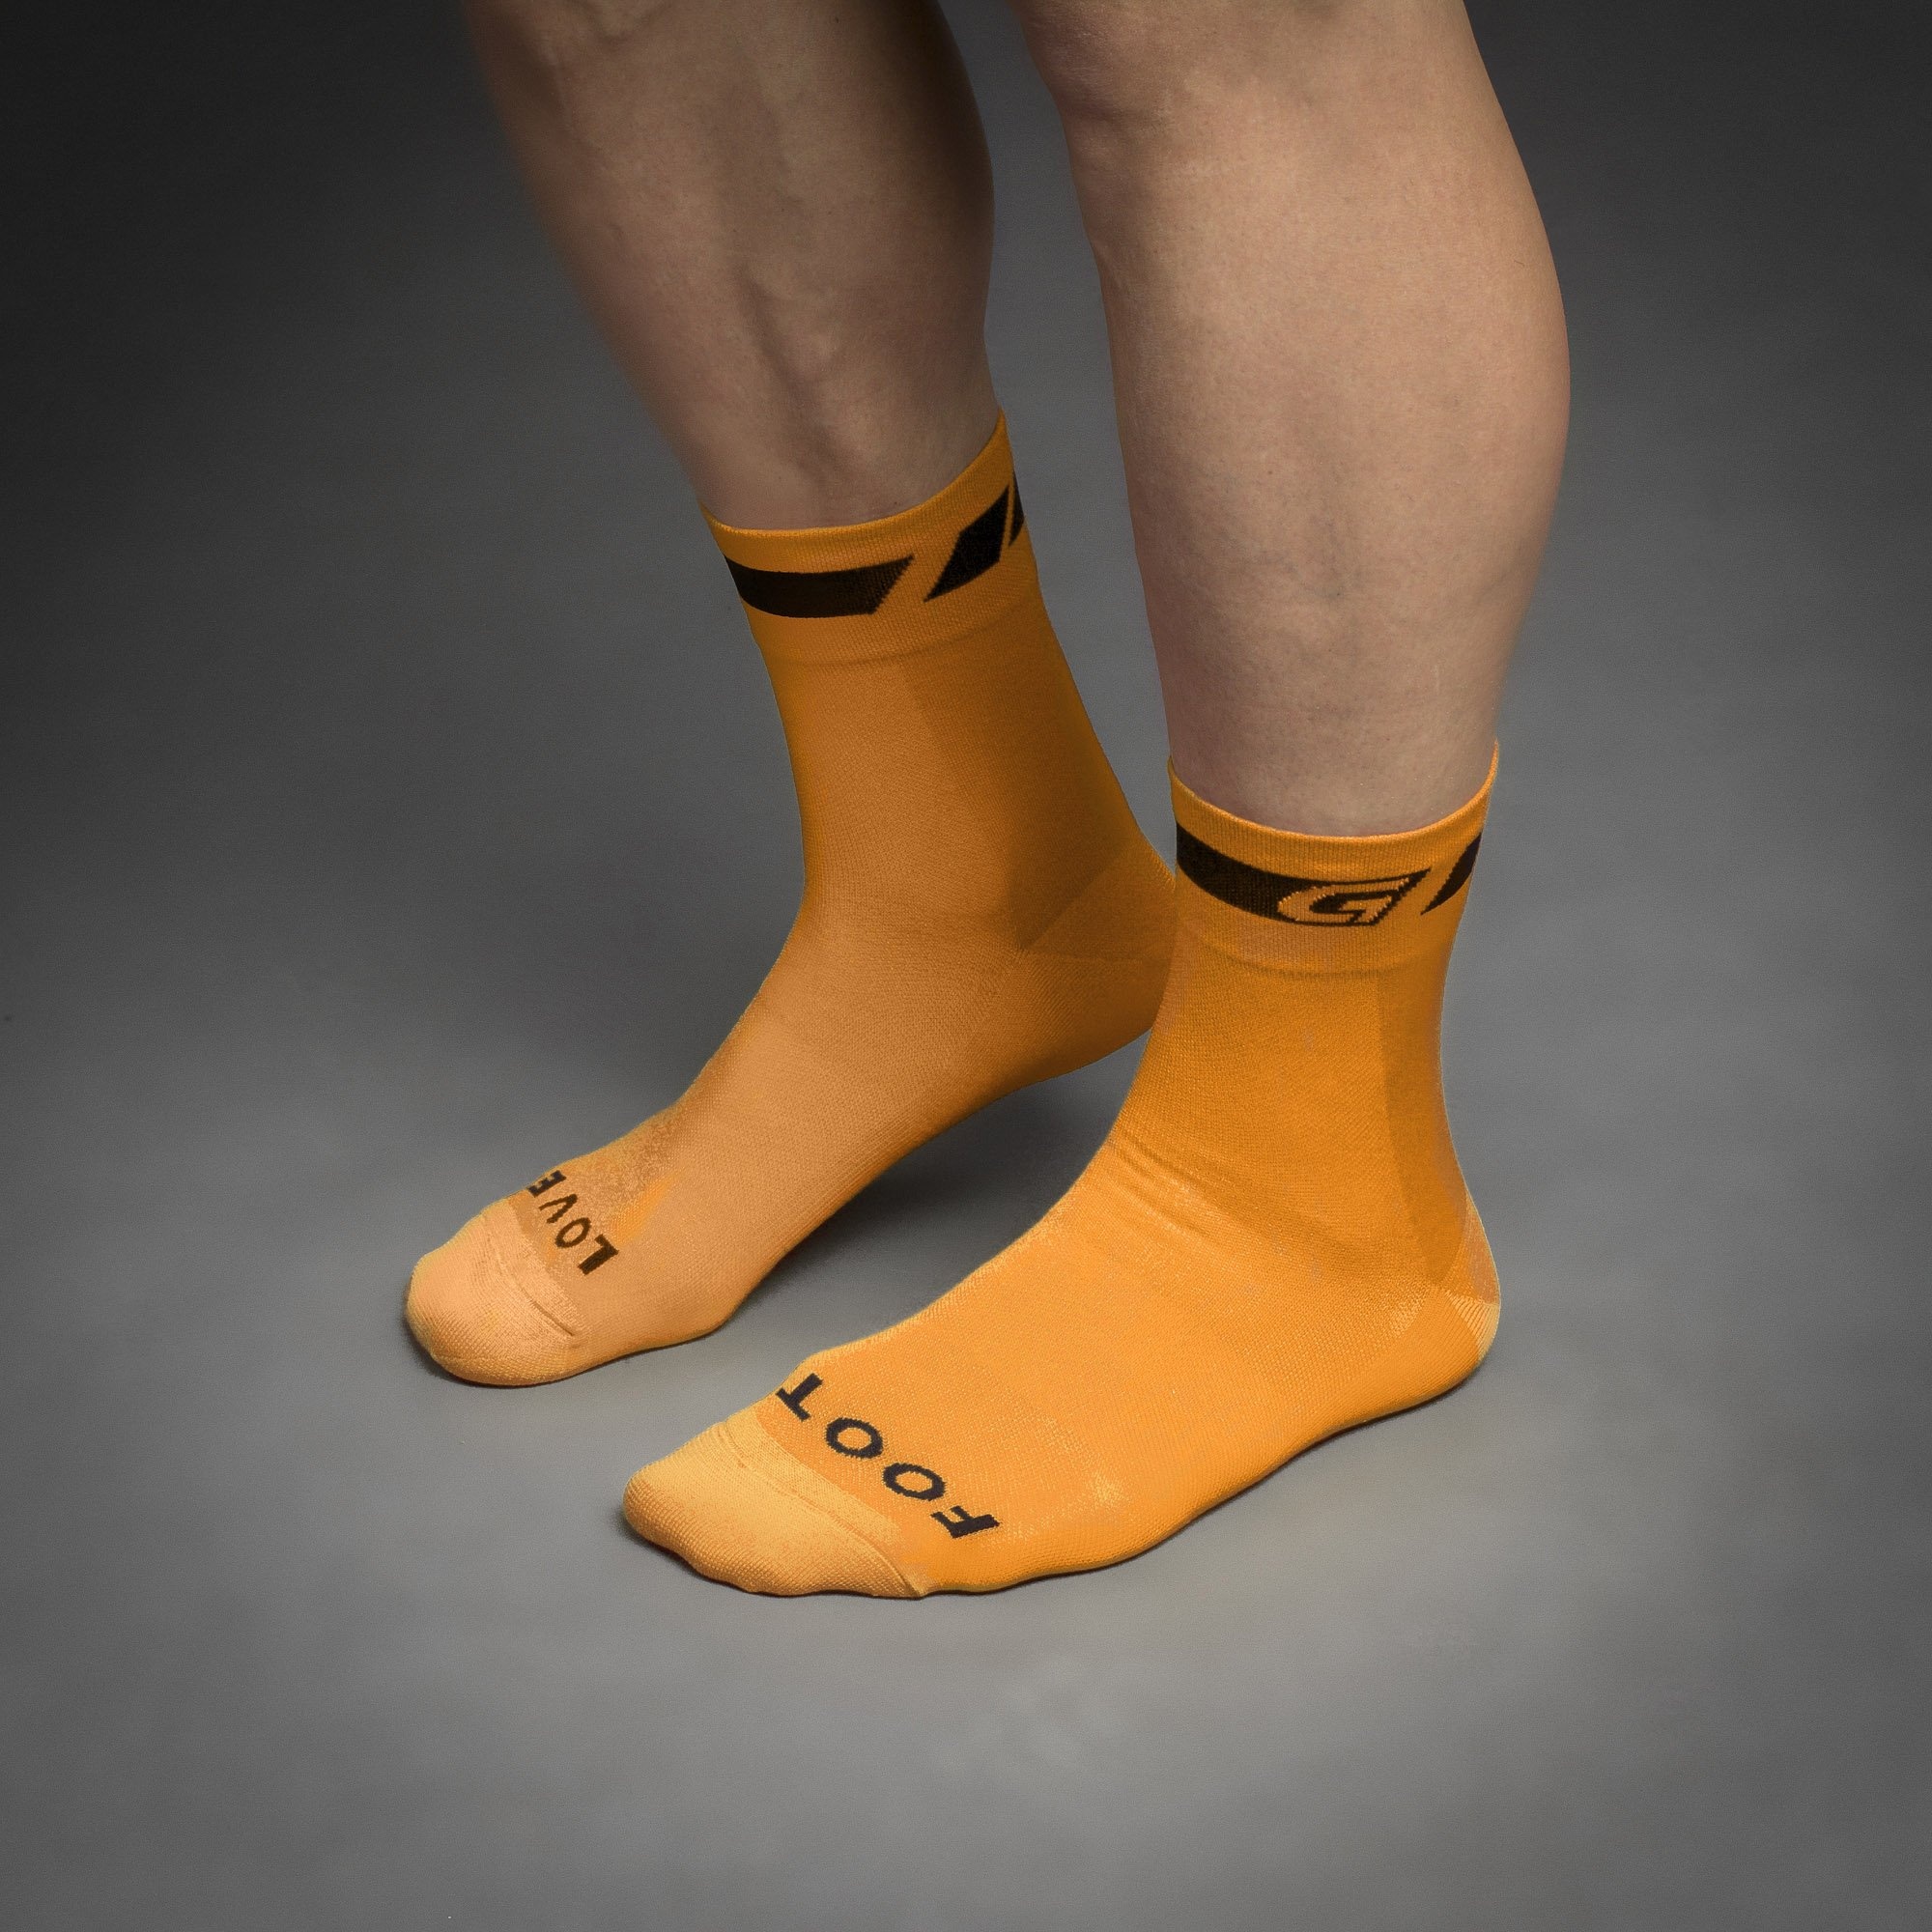 Beklædning - Sokker - GripGrab Regular Cut Summer Sock - Orange